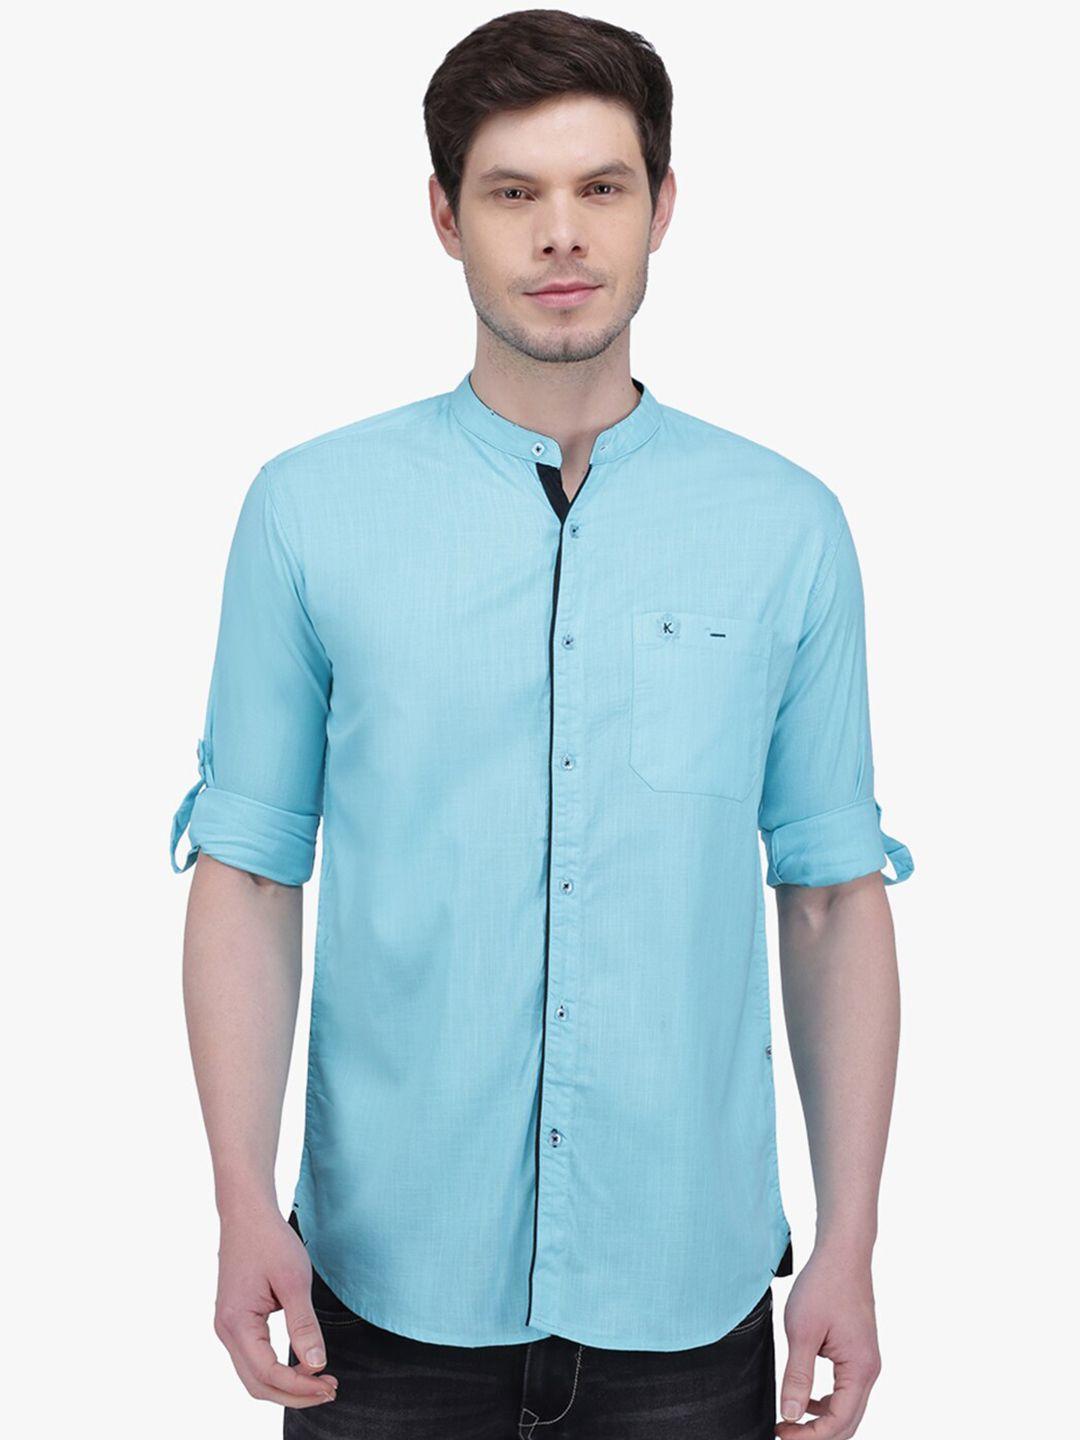 kuons avenue men smart slim fit linen casual shirt